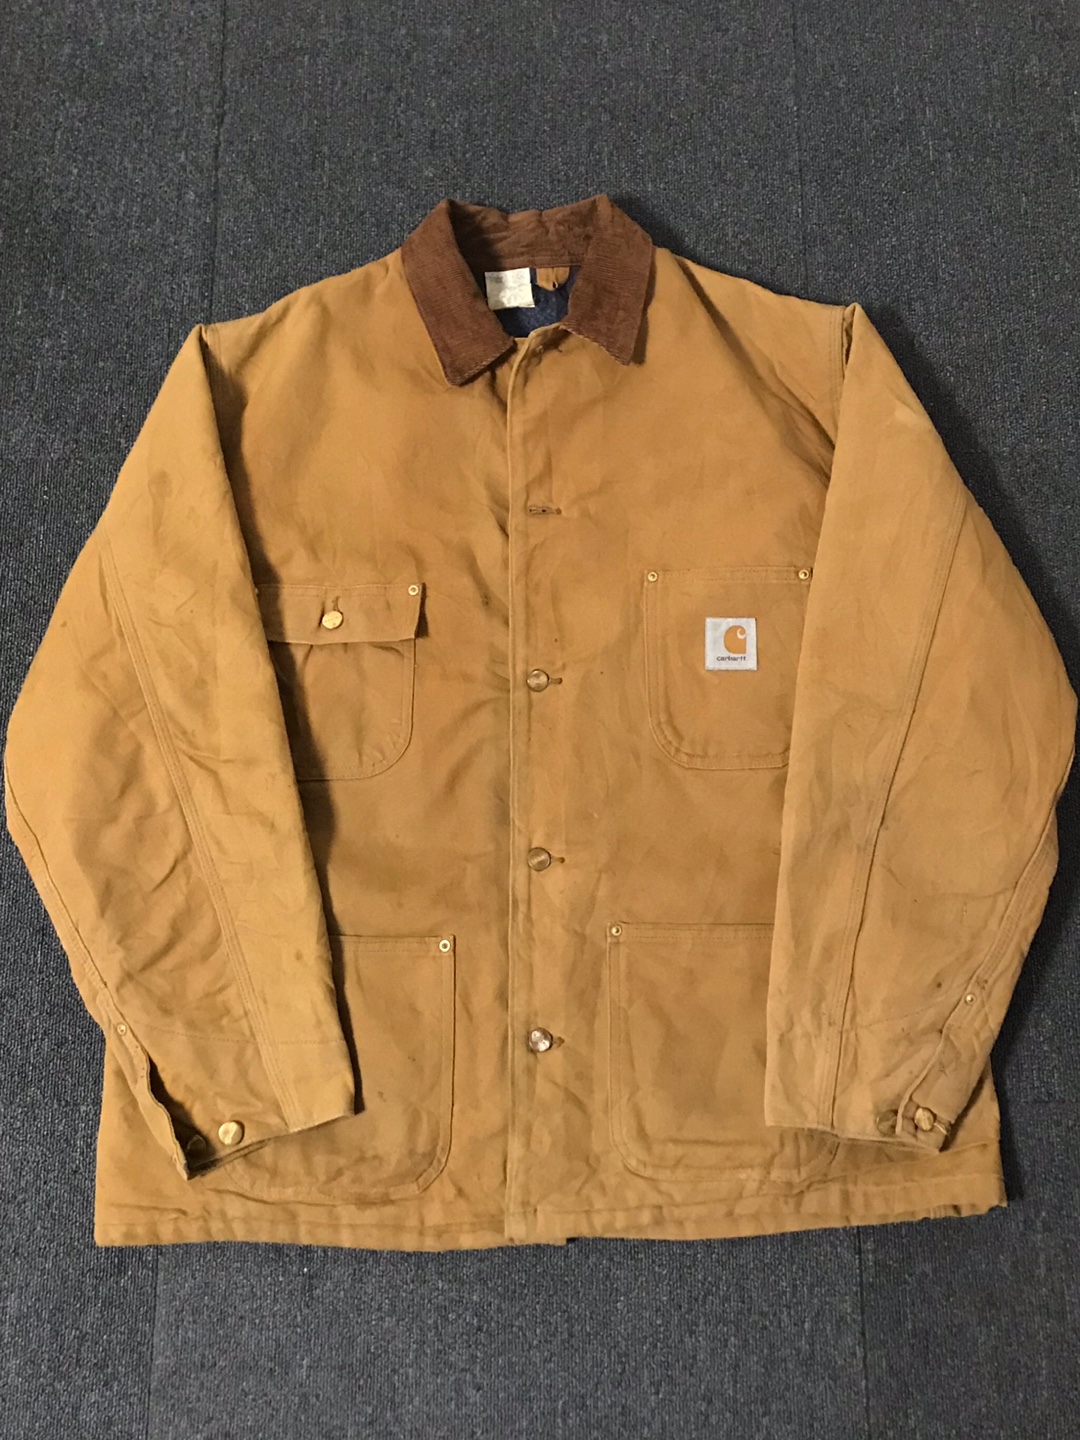 carhartt work jacket USA made (46 size, 103~ 추천)